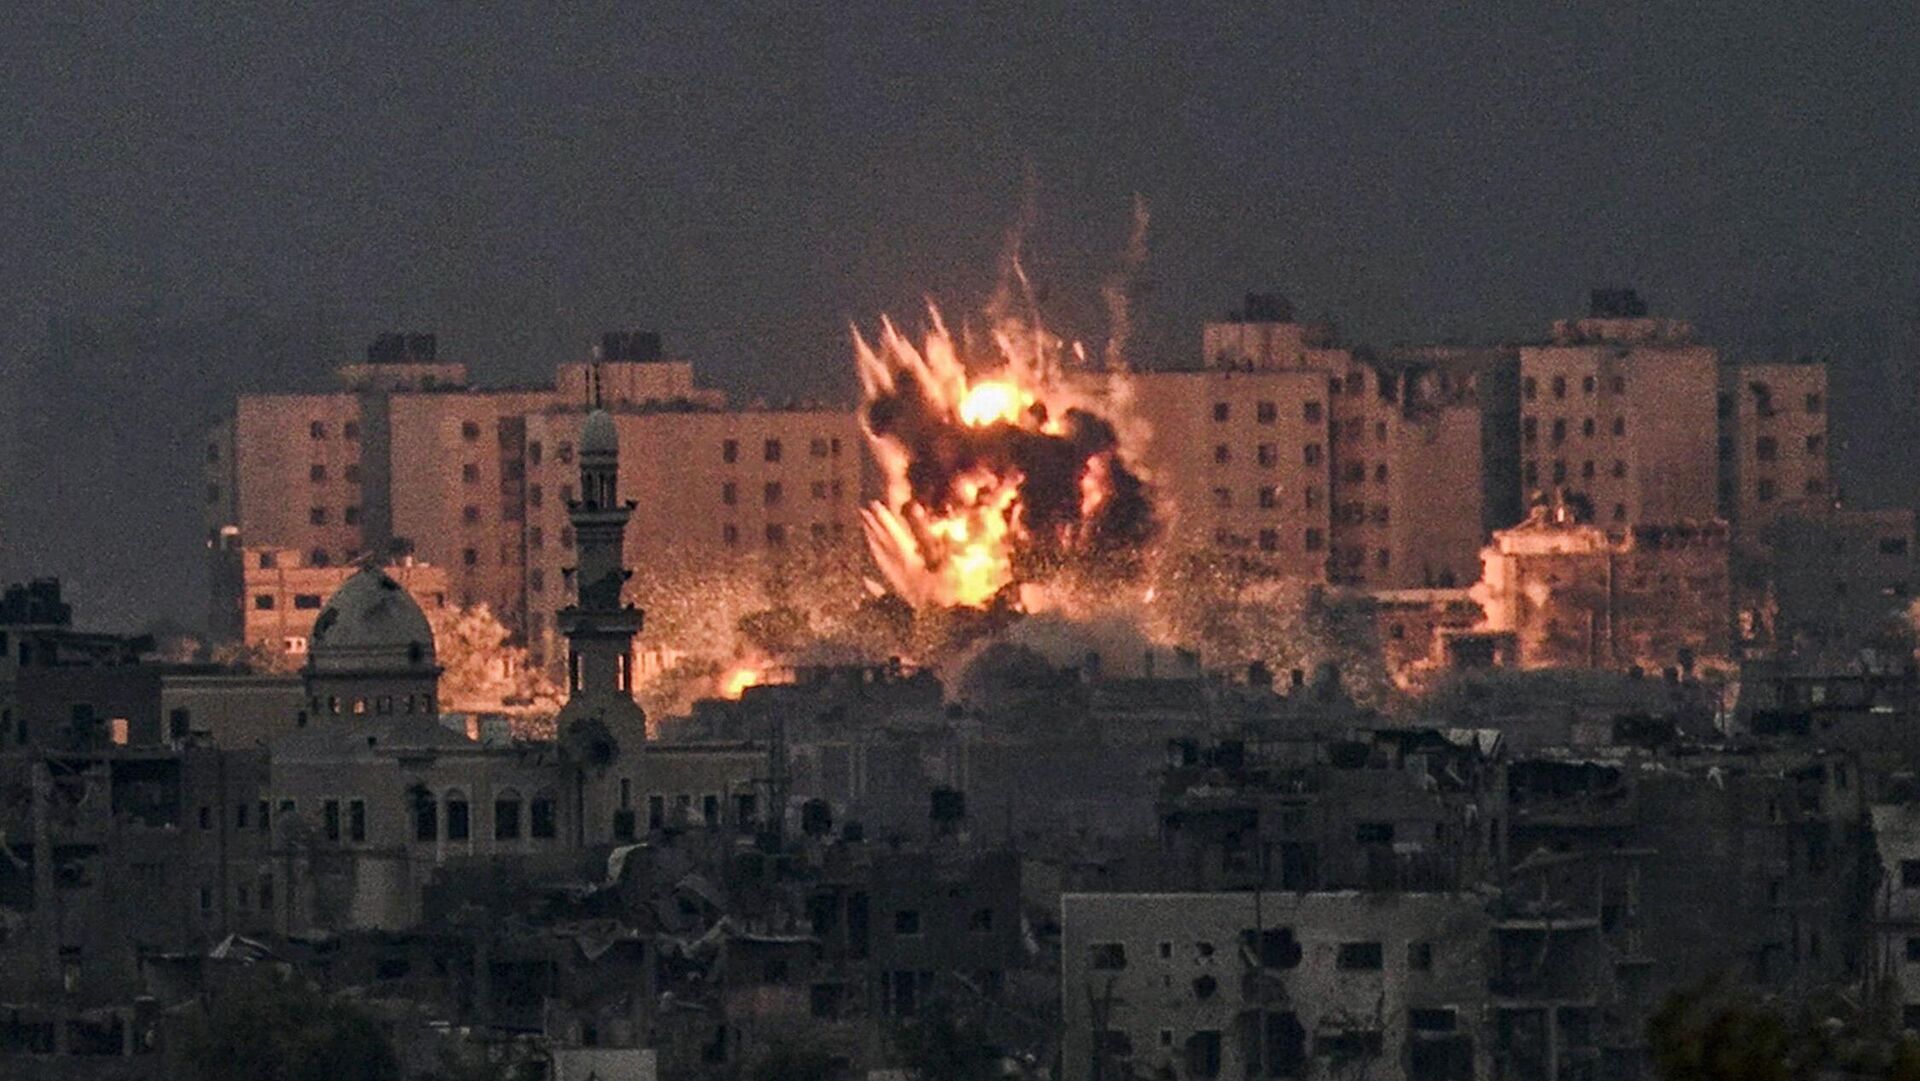 ՀԱՄԱՍ-ը պատրաստ է ազատ արձակել բոլոր գերեվարված քաղաքացիական անձանց, սակայն Գազայի հատվածի ինտենսիվ ռմբակոծությունները թույլ չեն տալիս դա անել. Մարզուկ